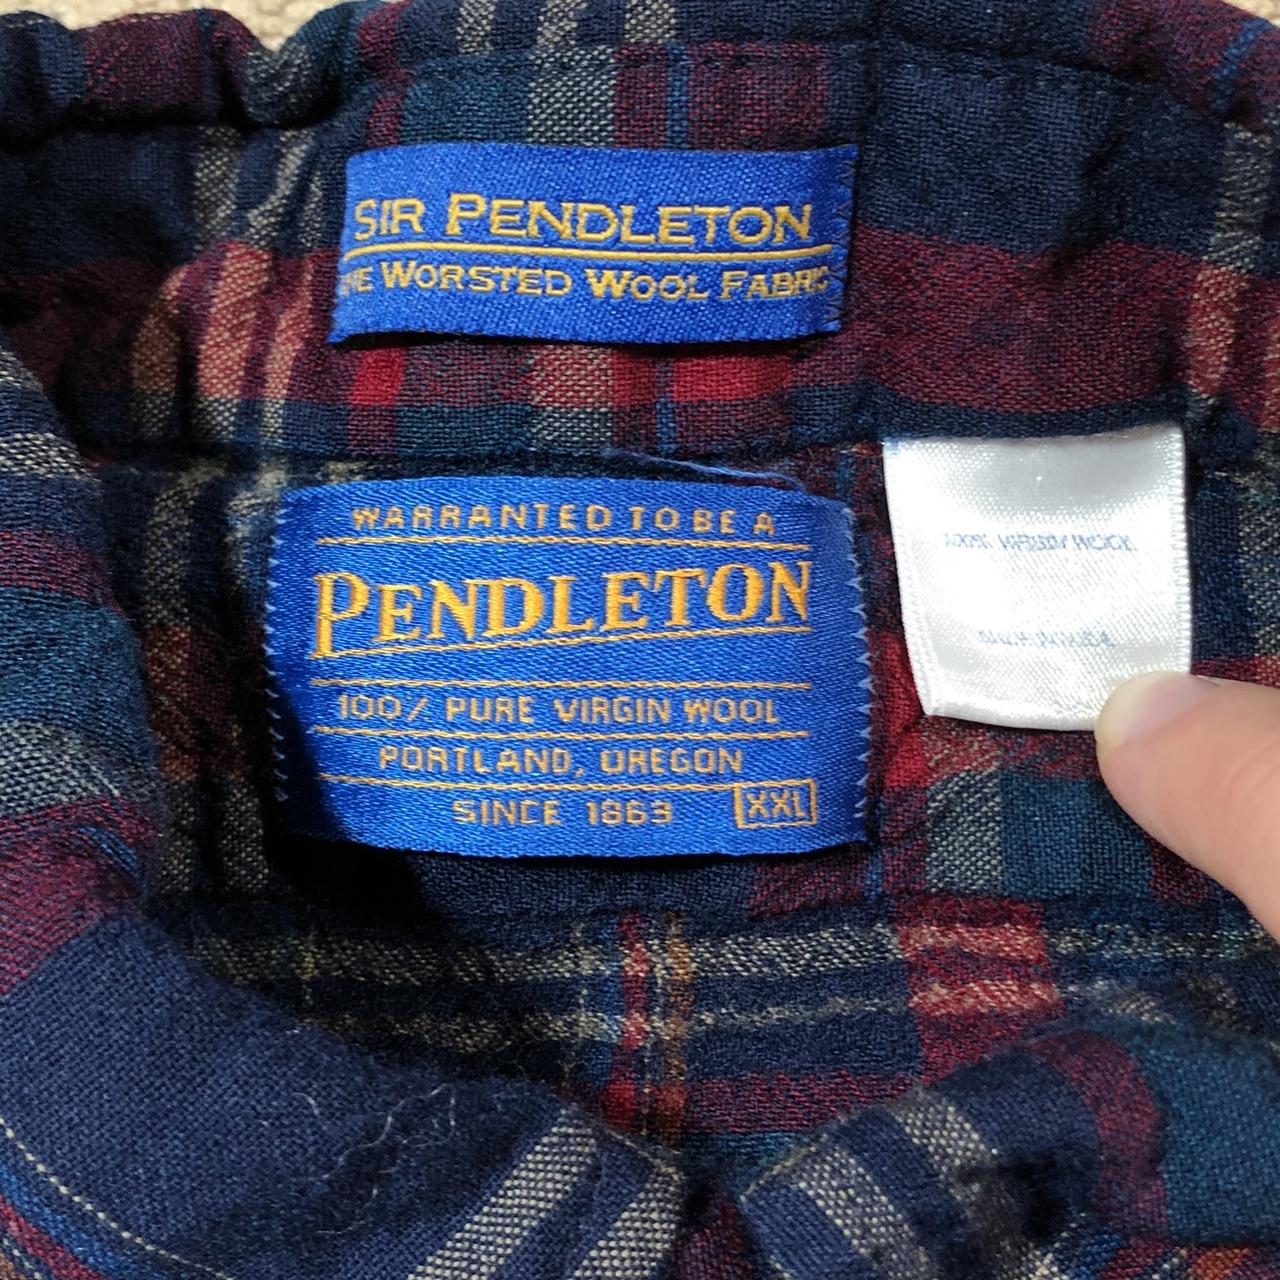 Vintage Pendleton 100% Virgin Wool Flannel. Has a... - Depop